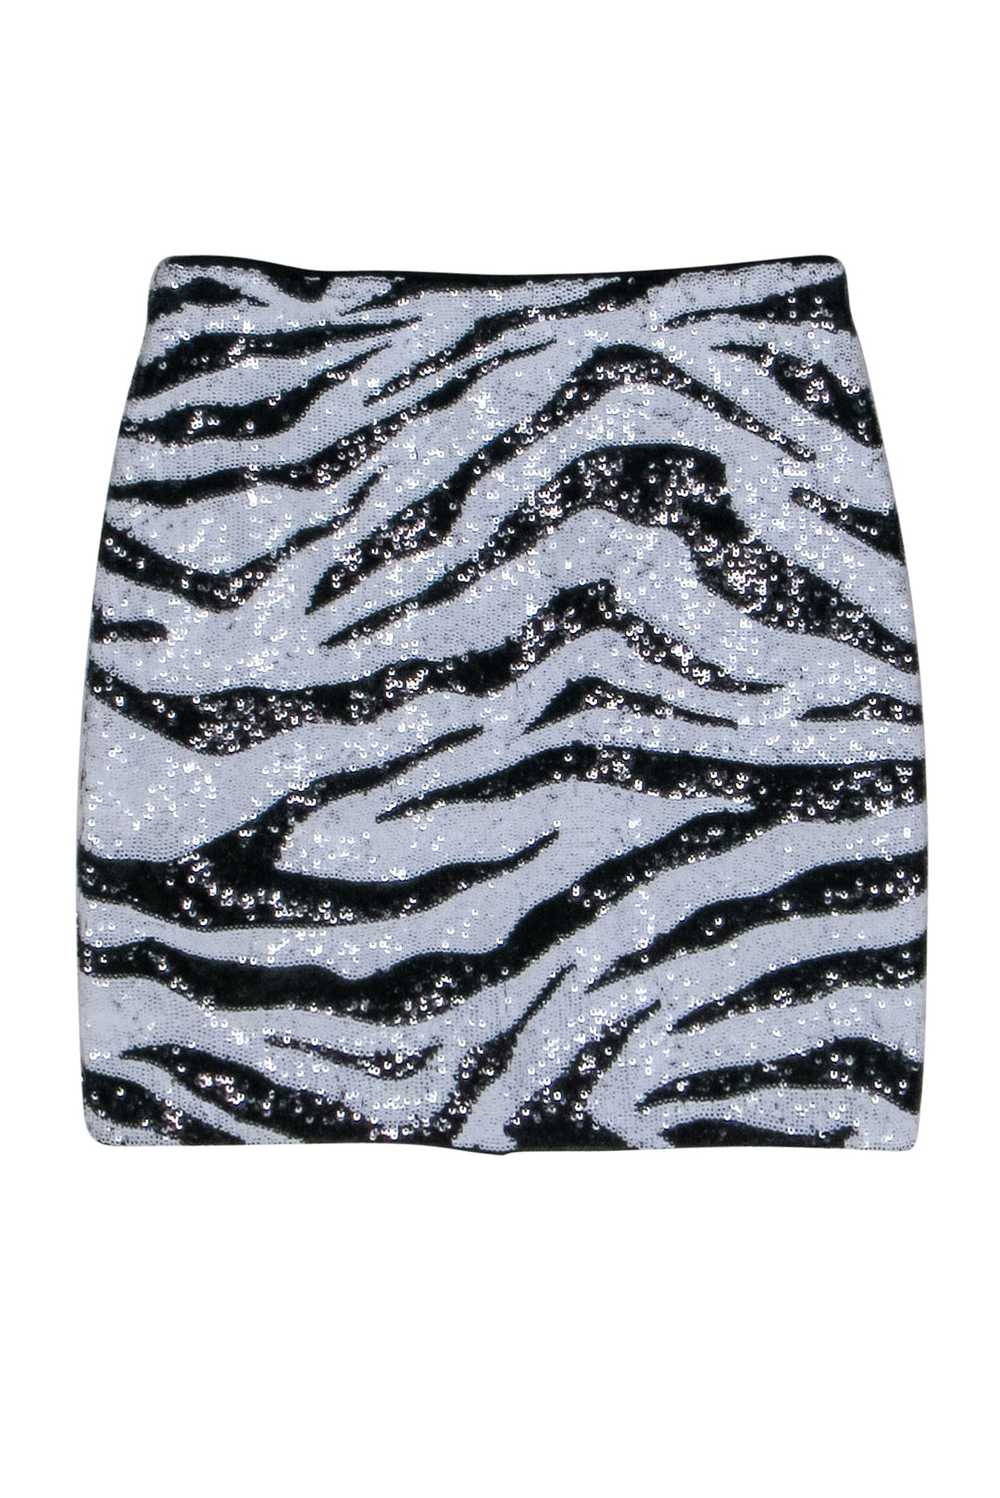 Alice & Olvia - Zebra Print Sequin Mini Skirt Sz 0 - image 1